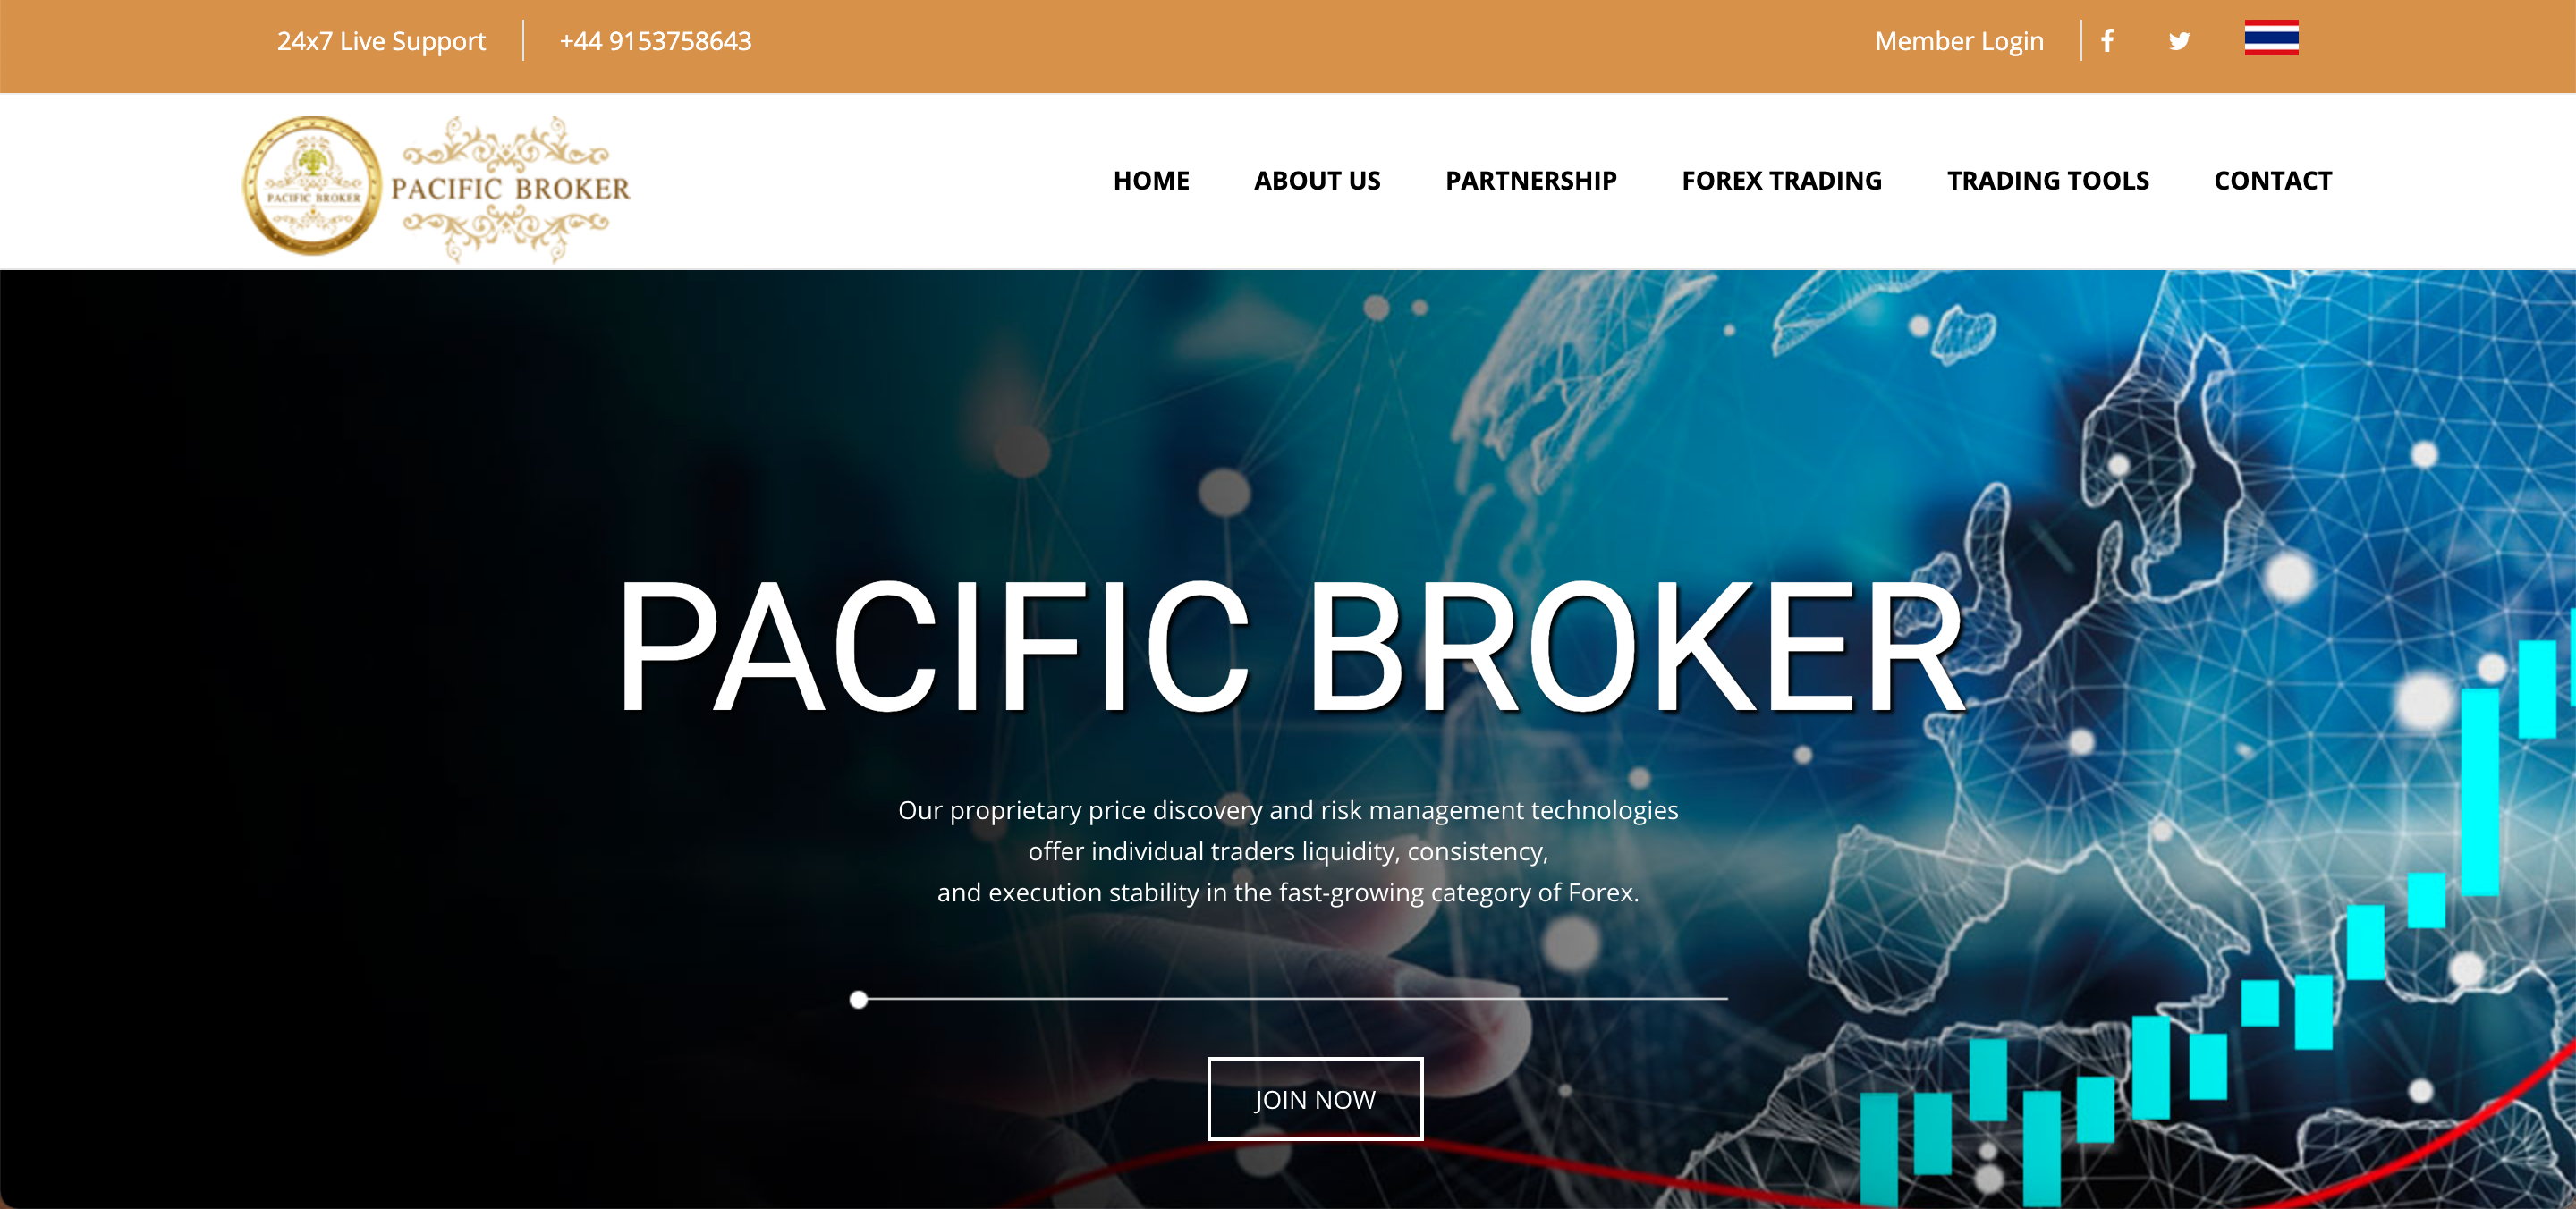 Pacific Broker website